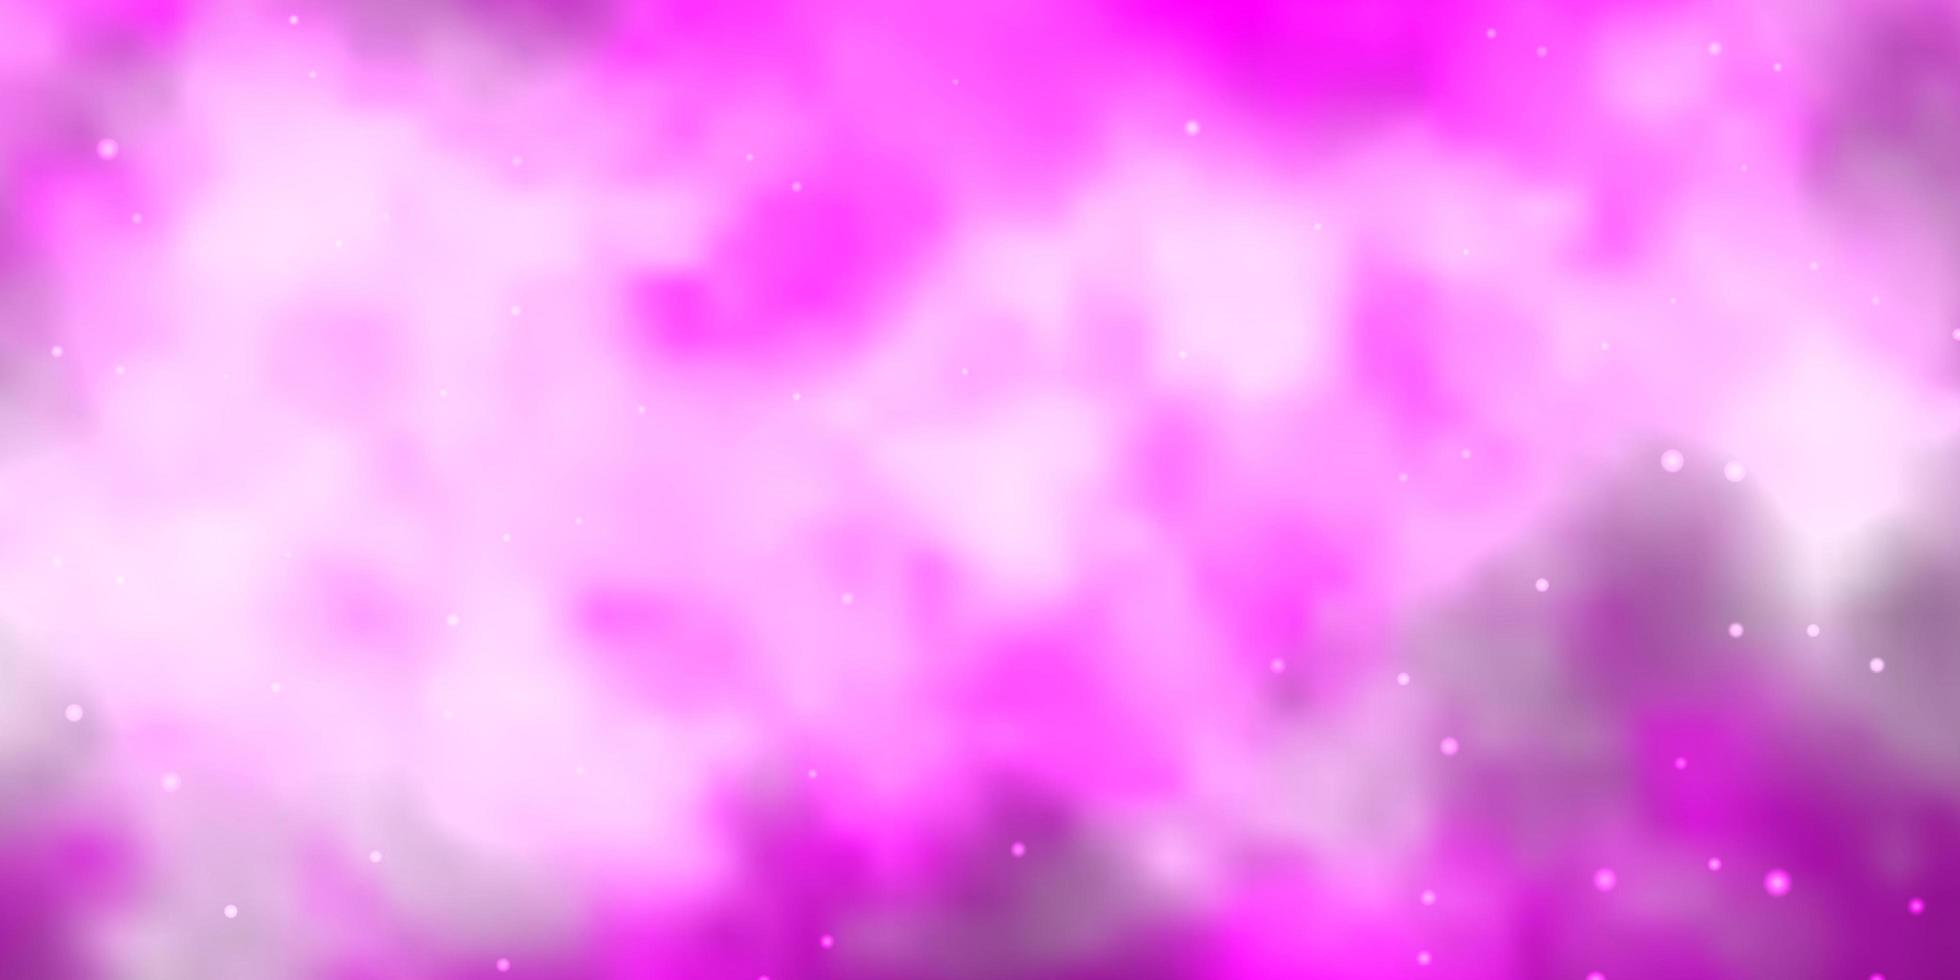 modello vettoriale rosa chiaro con stelle al neon.